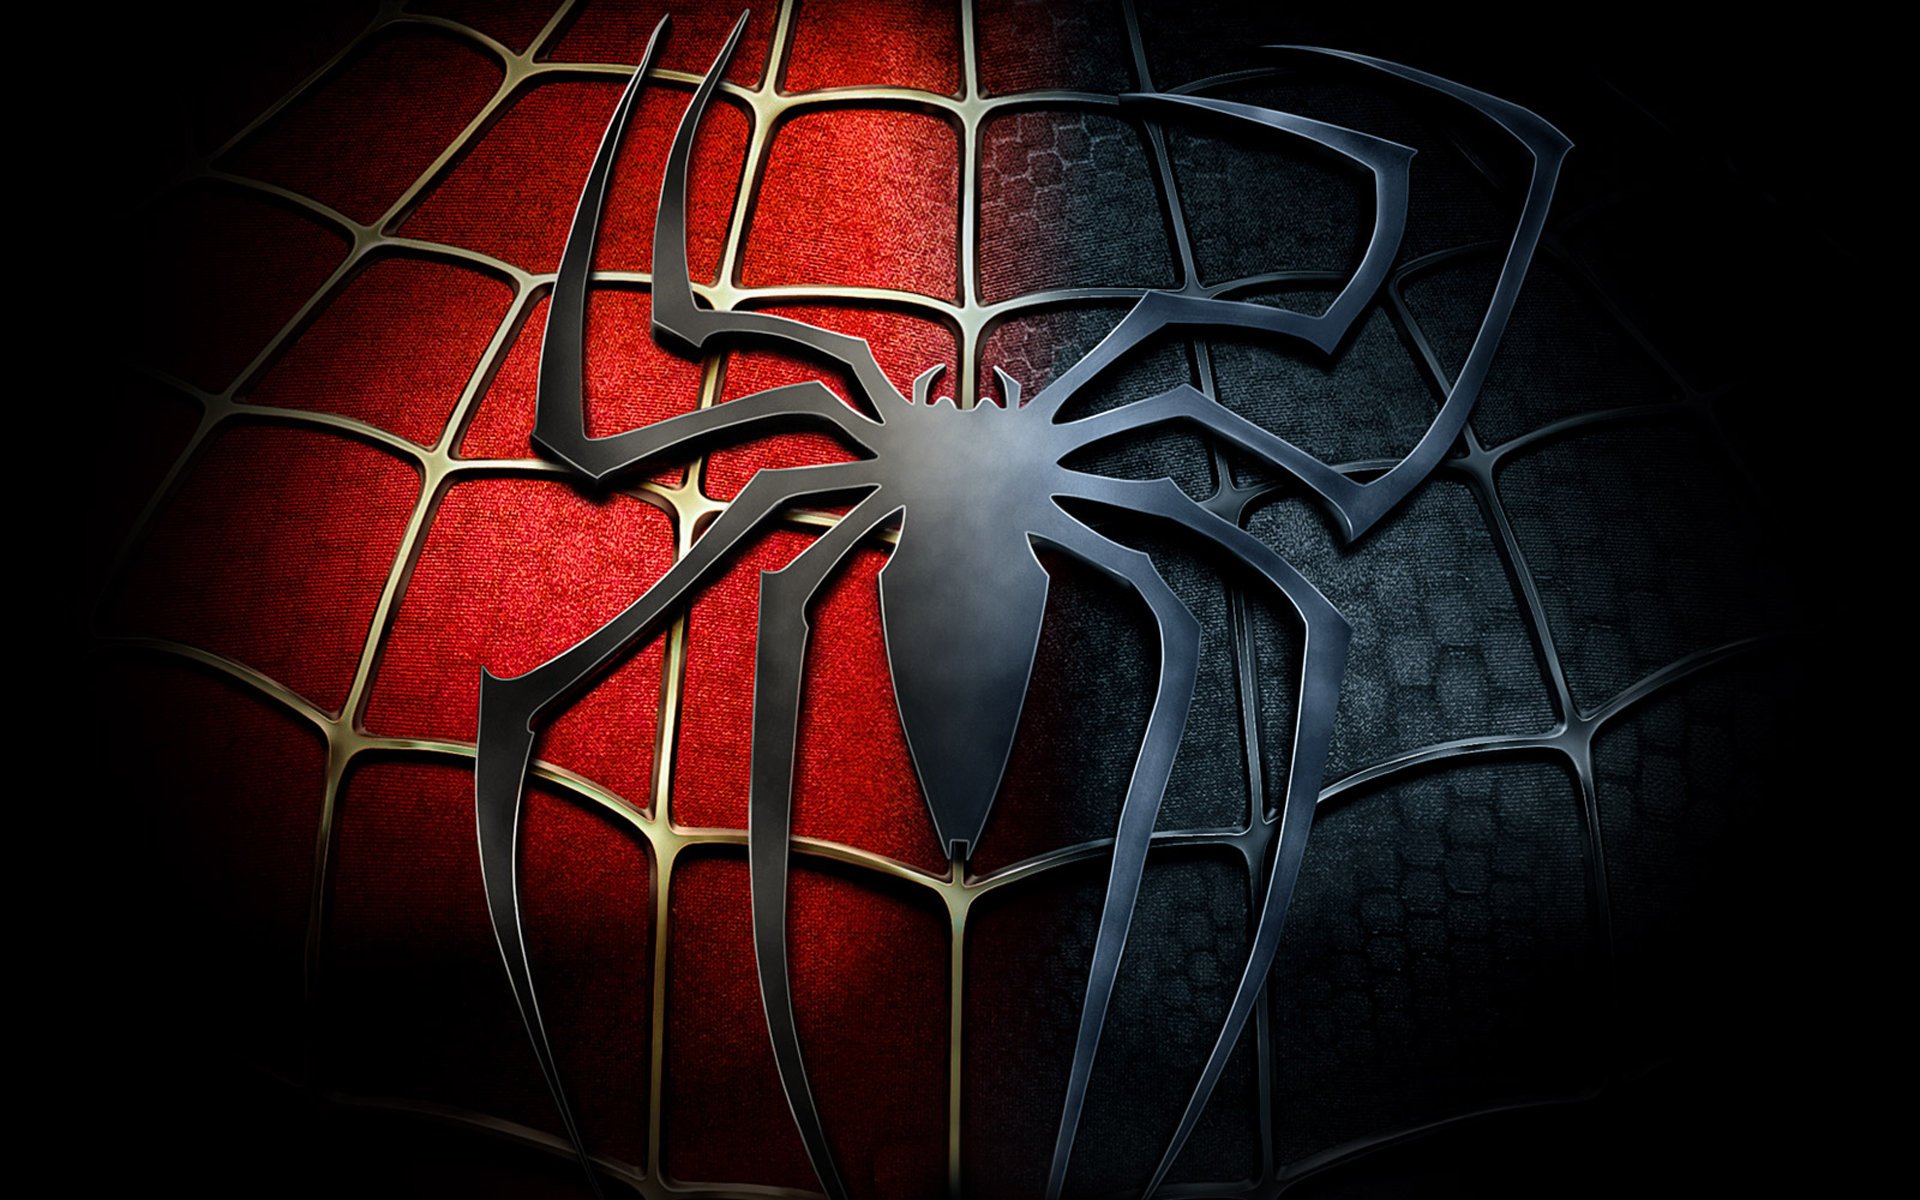 spider man free download